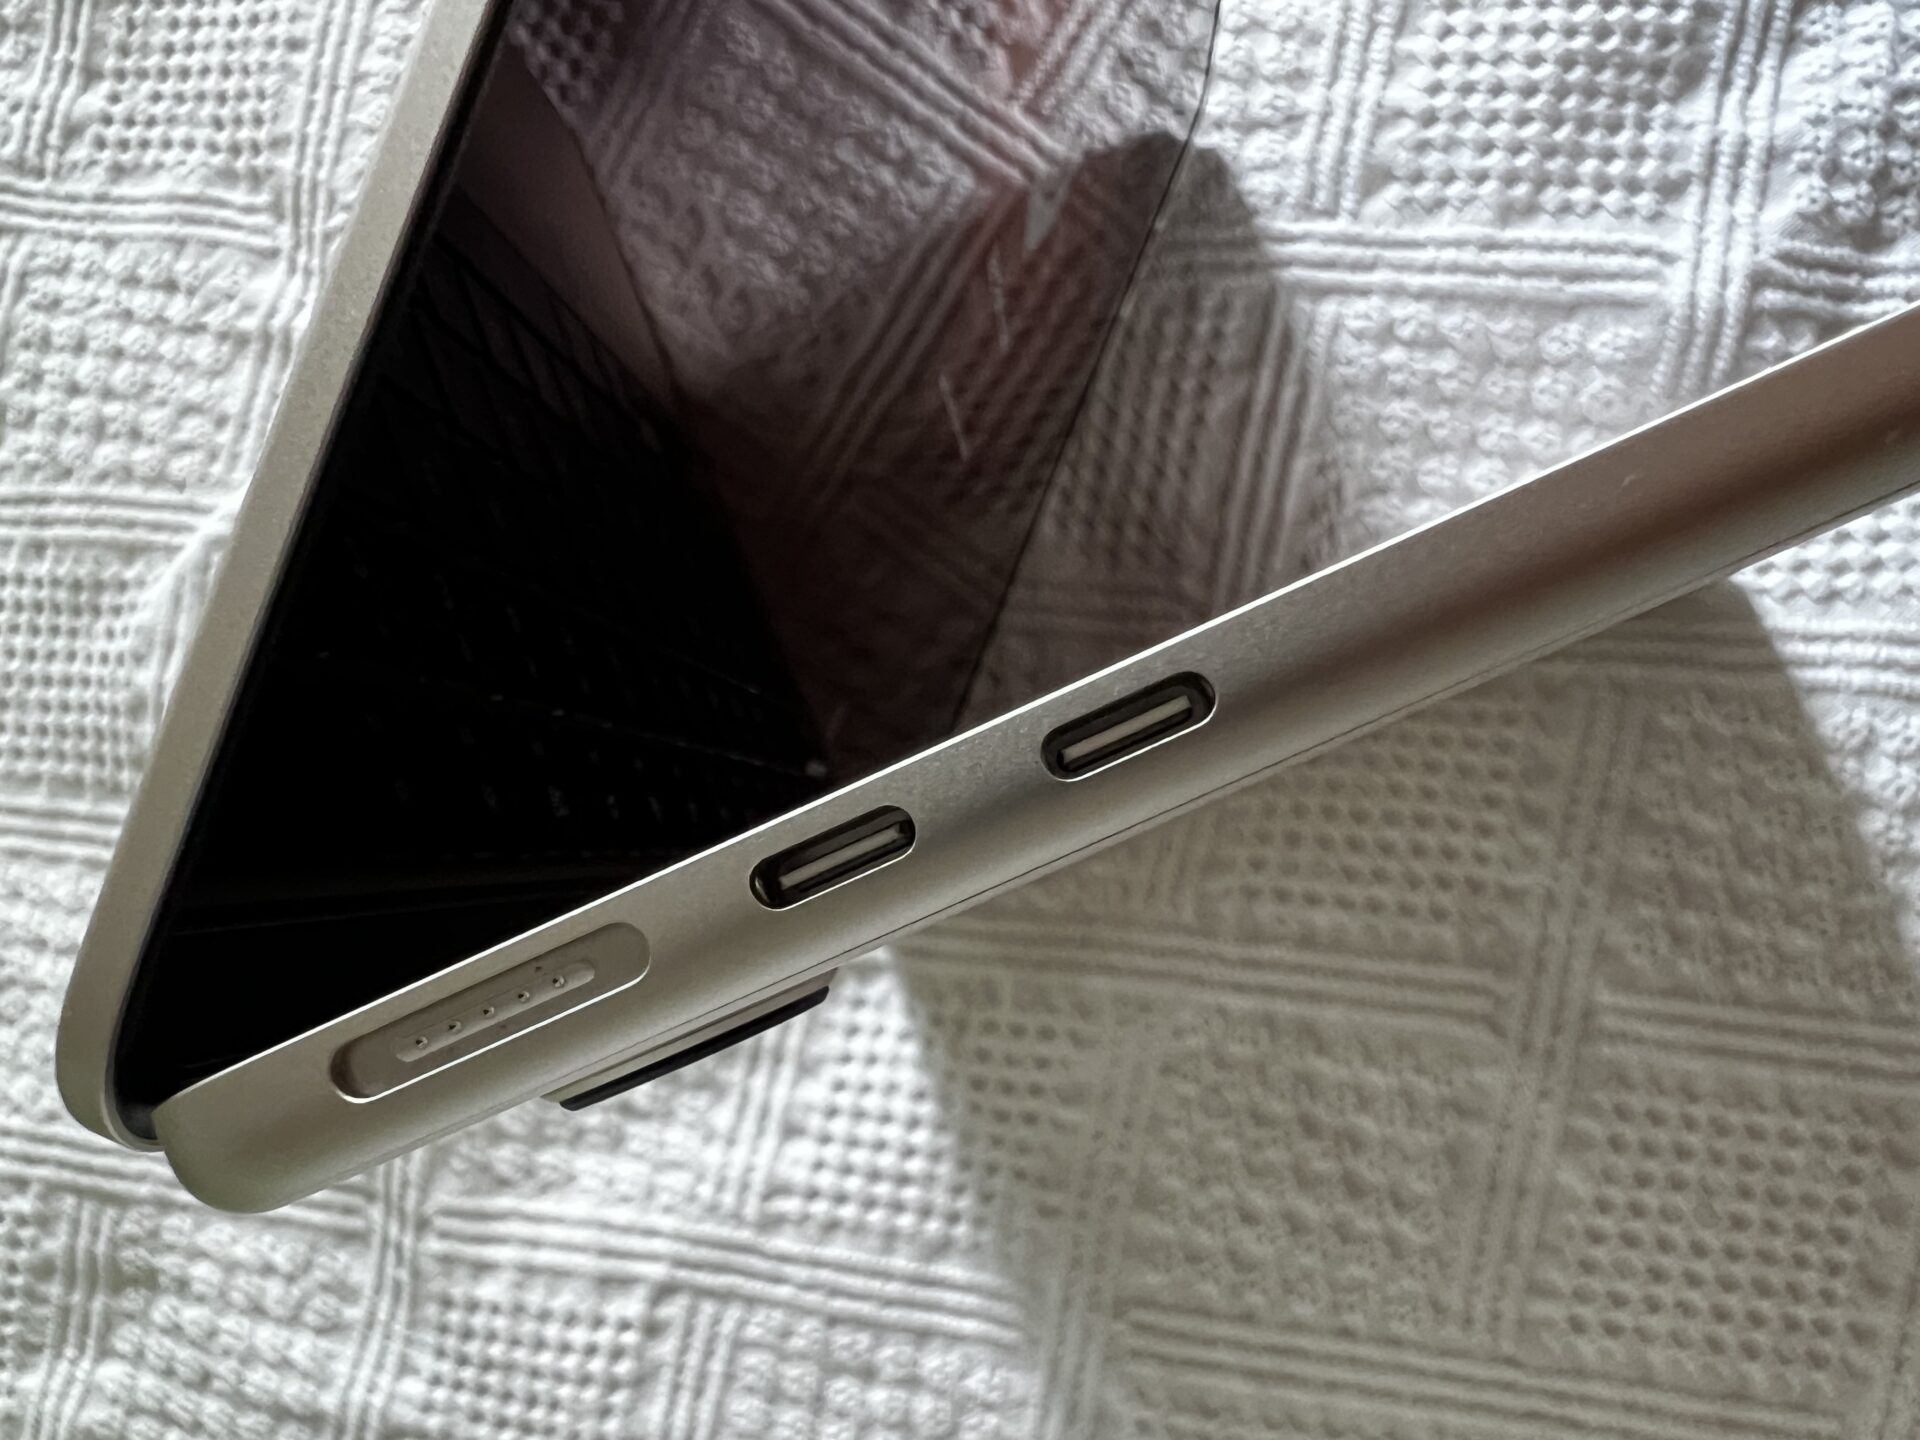 Das MacBook Air in Polarstern von der Seite gesehen. 2 USB-C-Anschlüsse und der MagSafe-Anschluss zum Aufladen